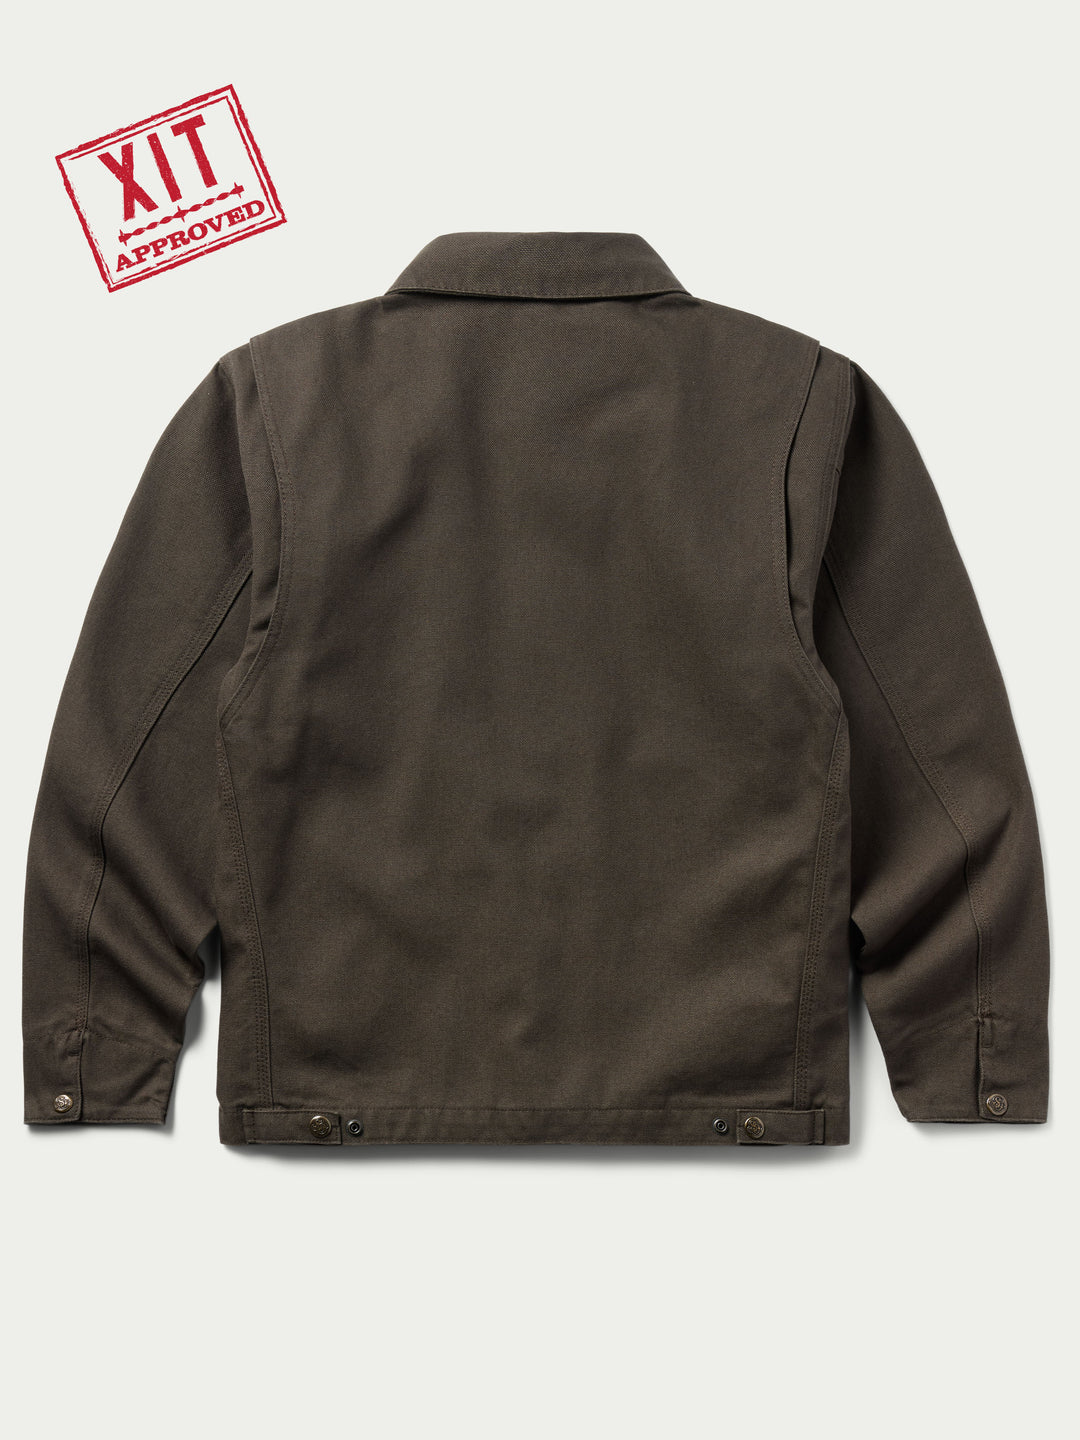 Zip Canvas Jacket - Schaefer Outfitter